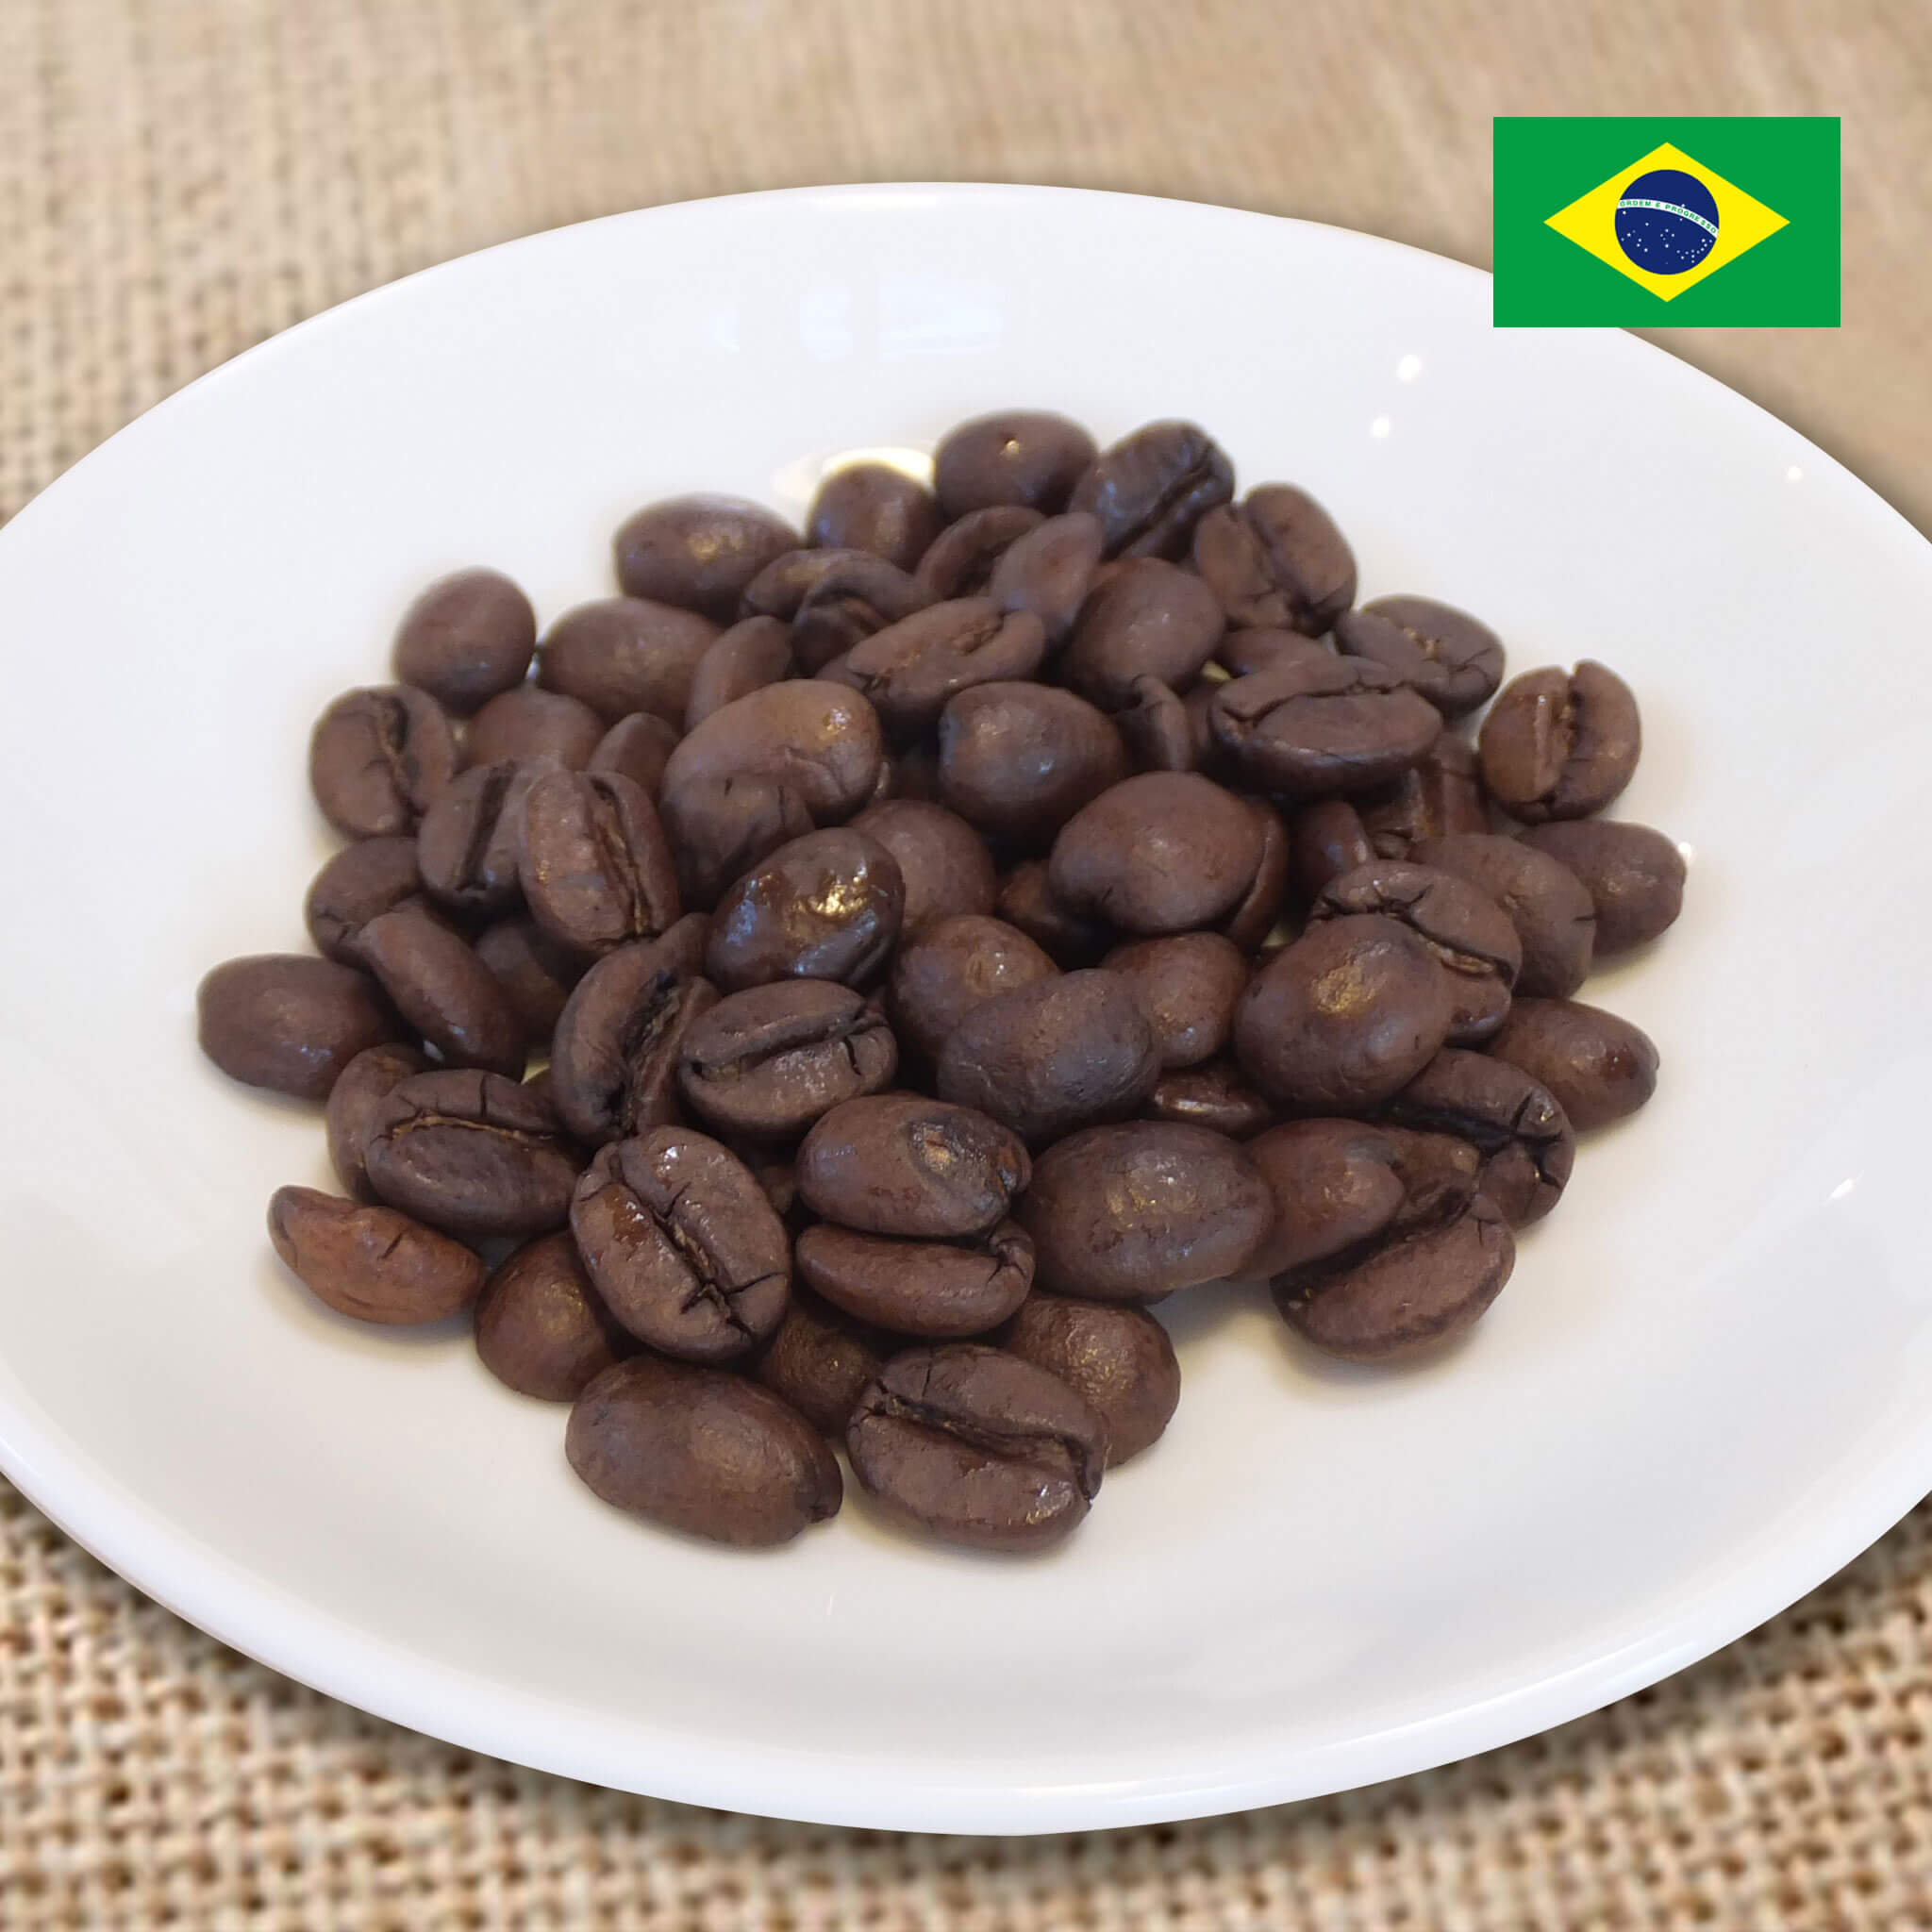 自家焙煎 コーヒー豆 ブラジル　サントアントニオ　プレミアムショコラ　200ｇ